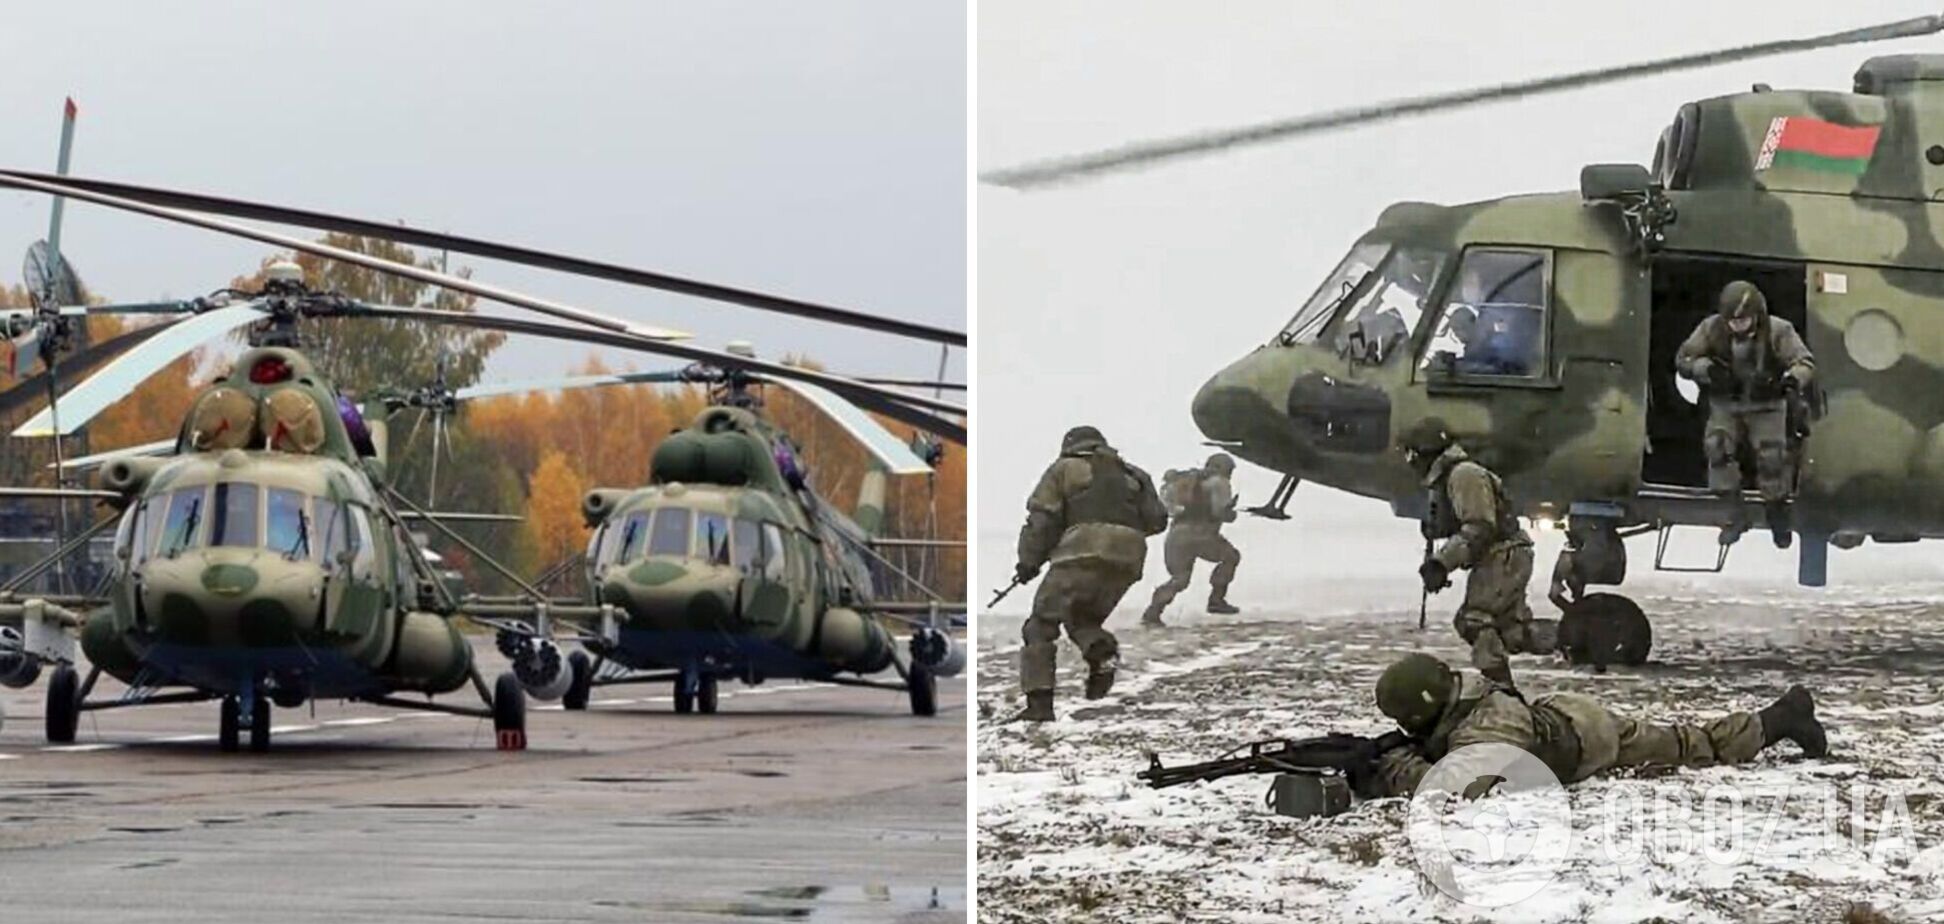 Появились новые фото аэродромов в Беларуси: российских вертолетов стало меньше